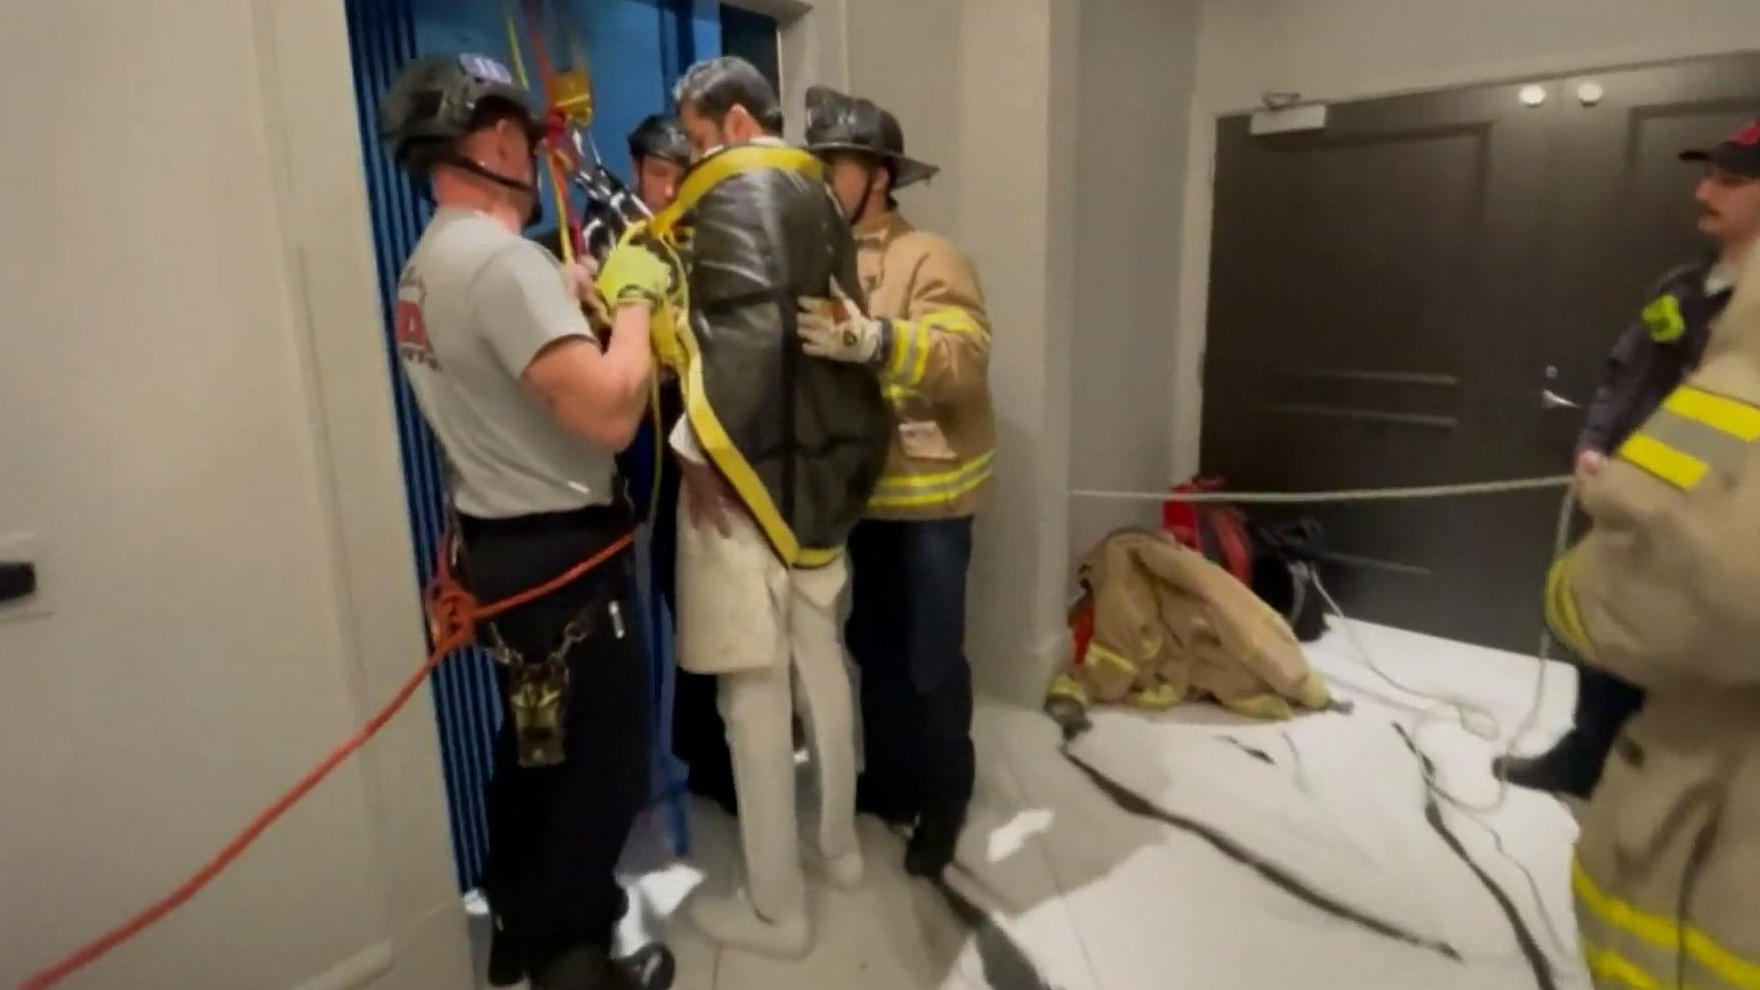 Hochzeits-Horror! Brautpaar bleibt im Aufzug stecken Aftershow im Fahrstuhl